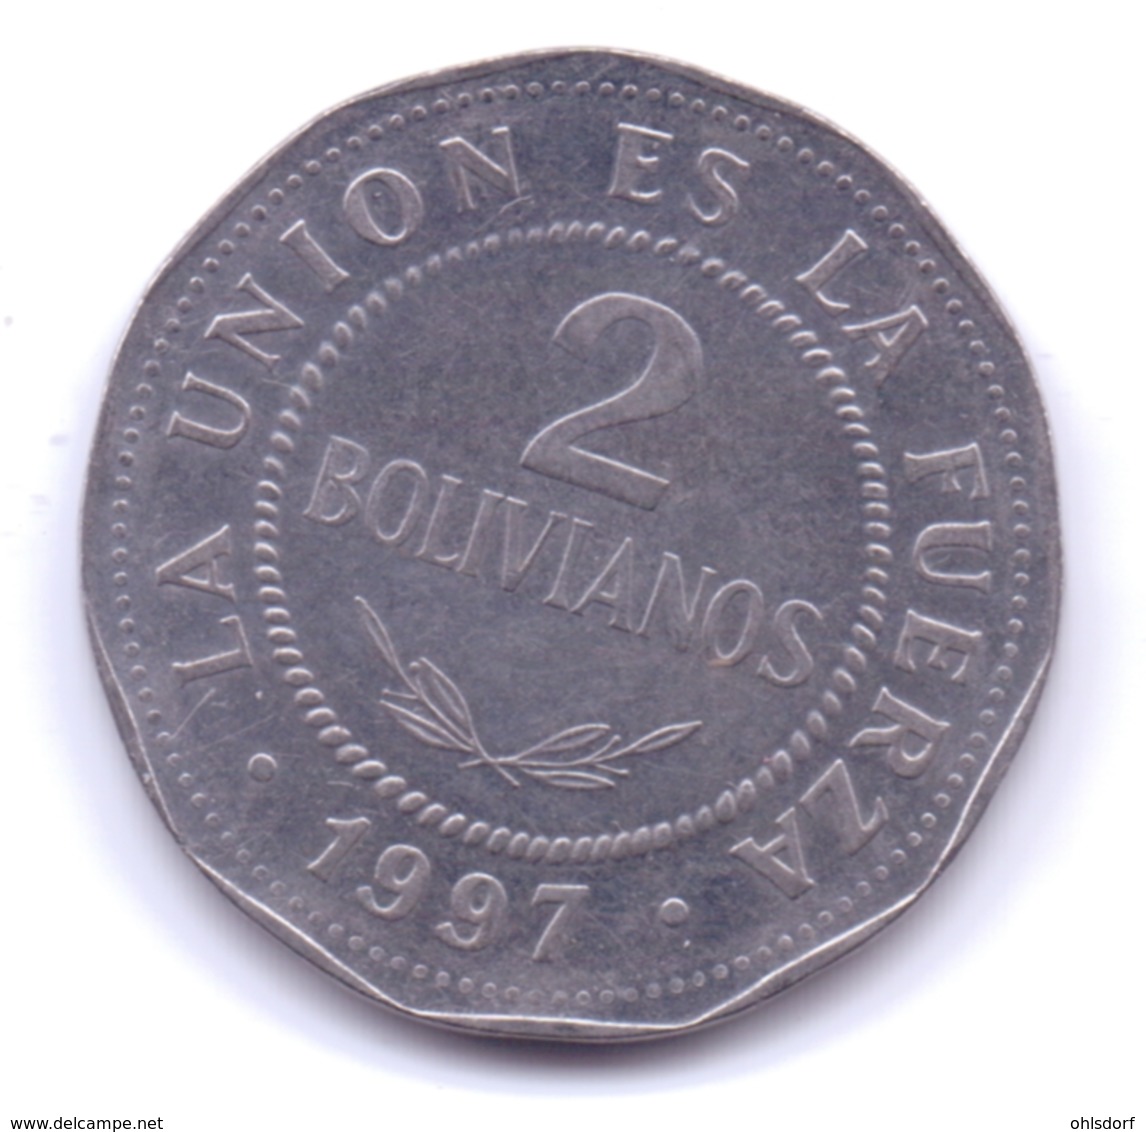 BOLIVIA 1997: 2 Bolivianos, KM 206.2 - Bolivië